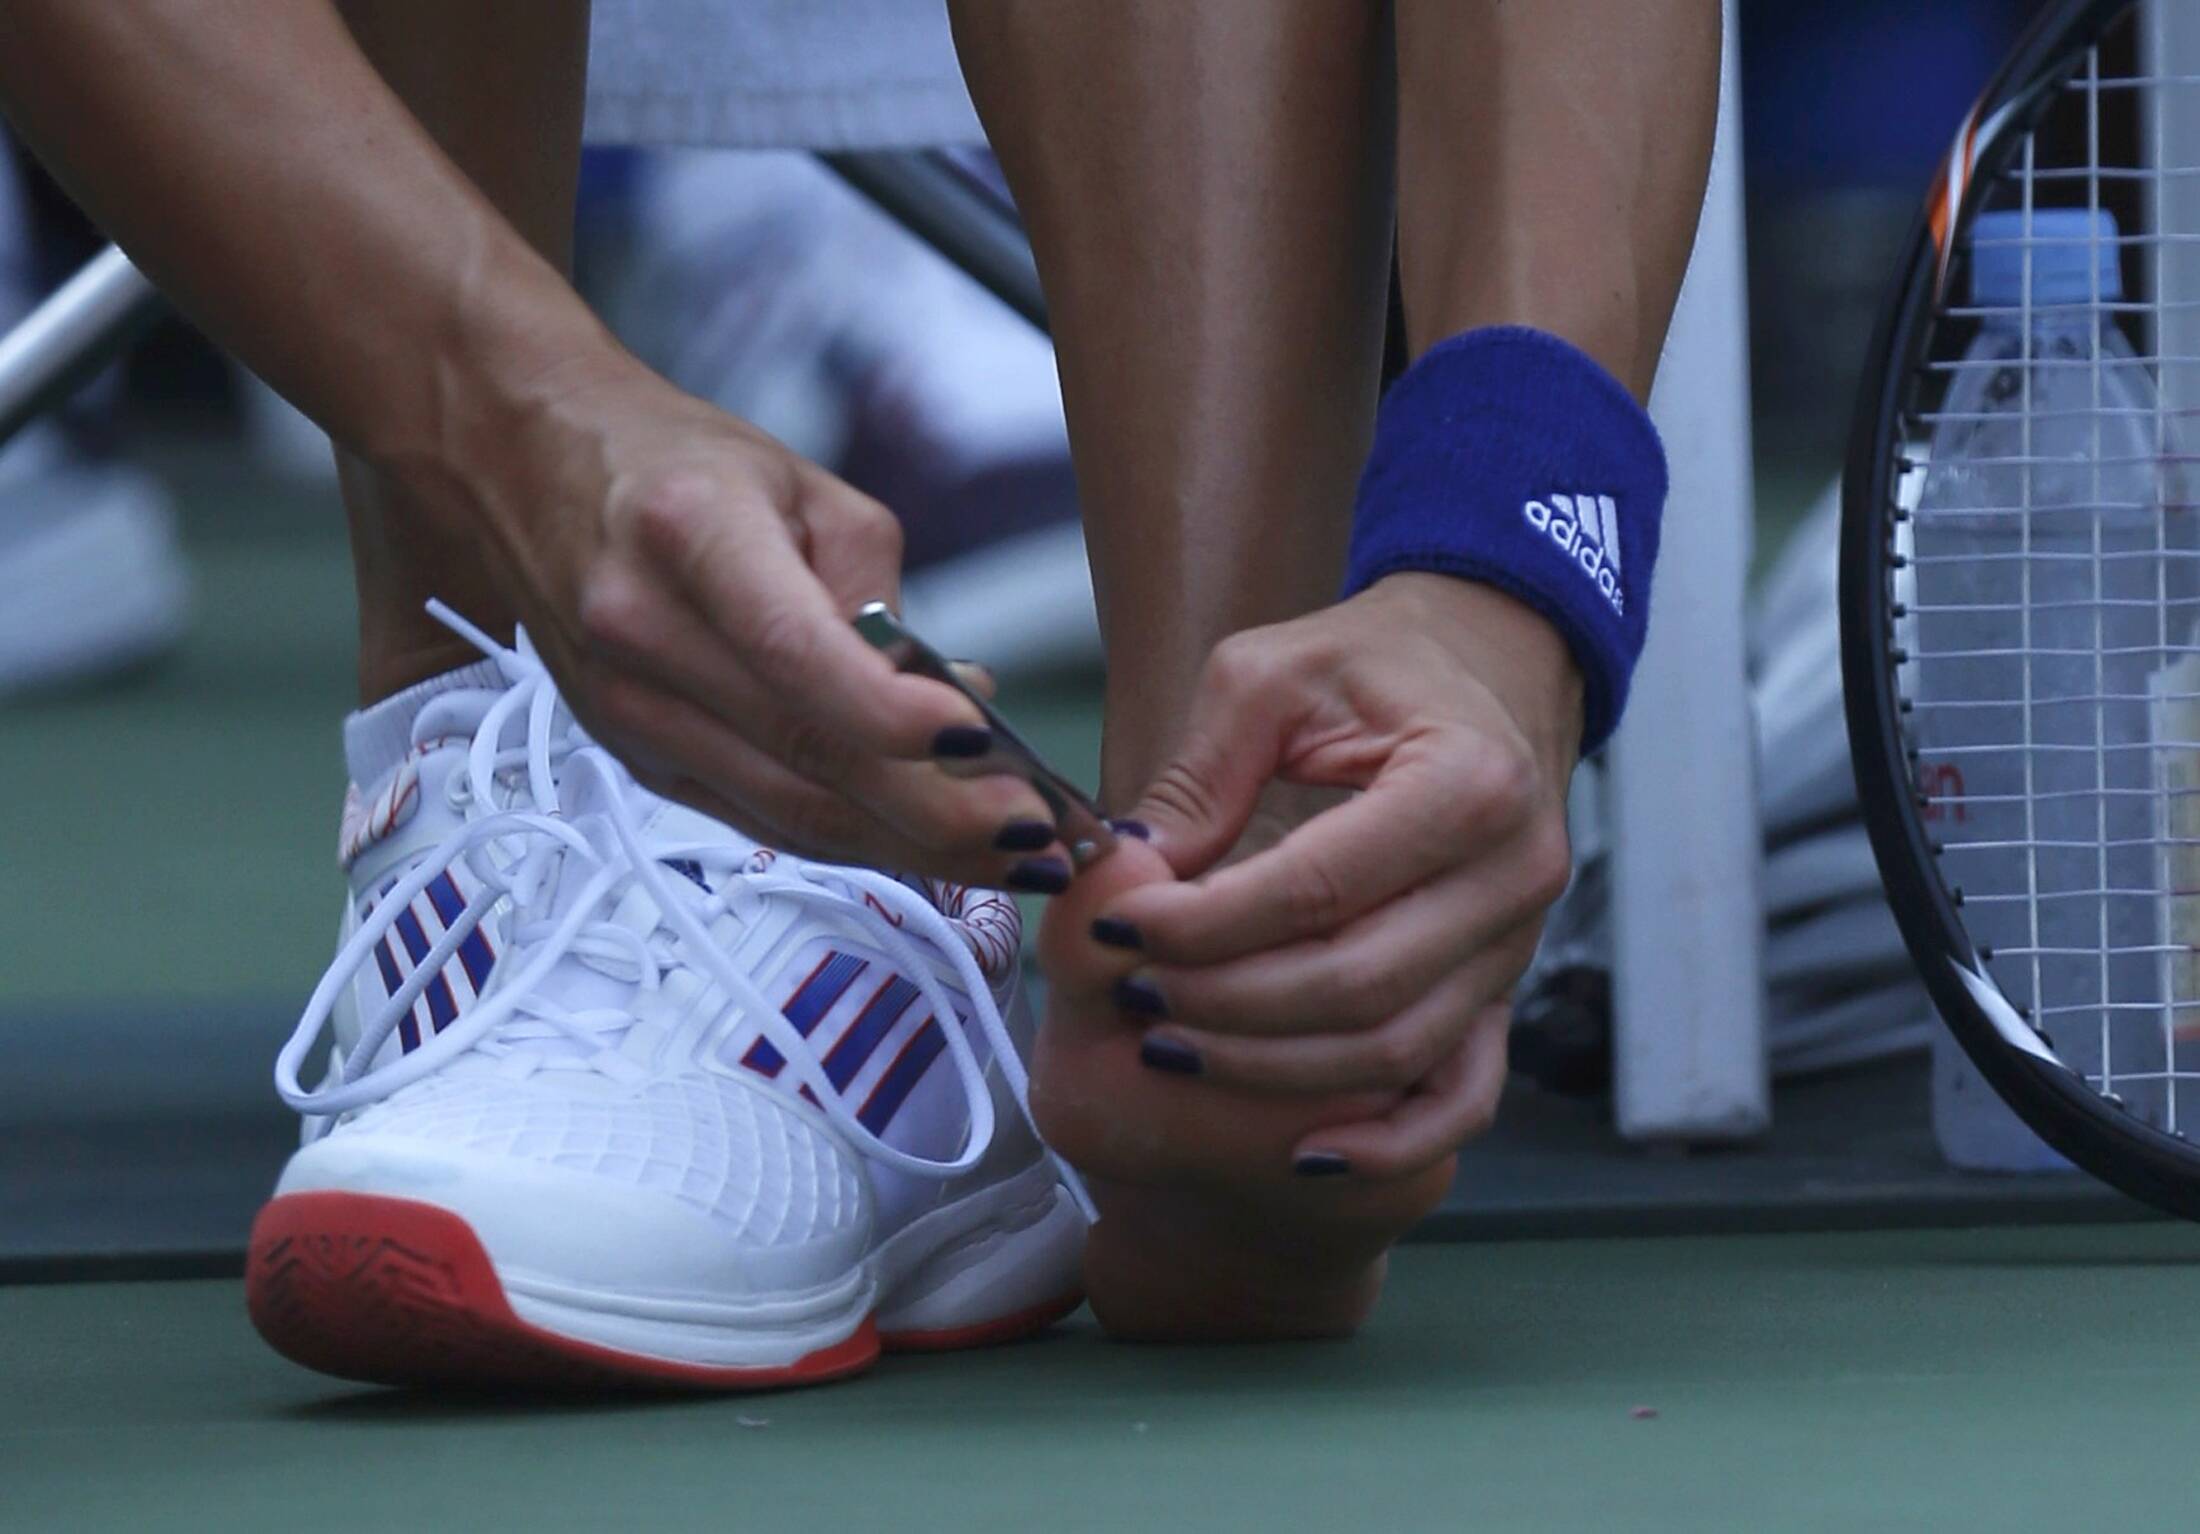 Sérvia Ana Ivanovic faz pausa para cortar unha durante partida do US Open. Foto: Eduardo Munoz/ Reuters